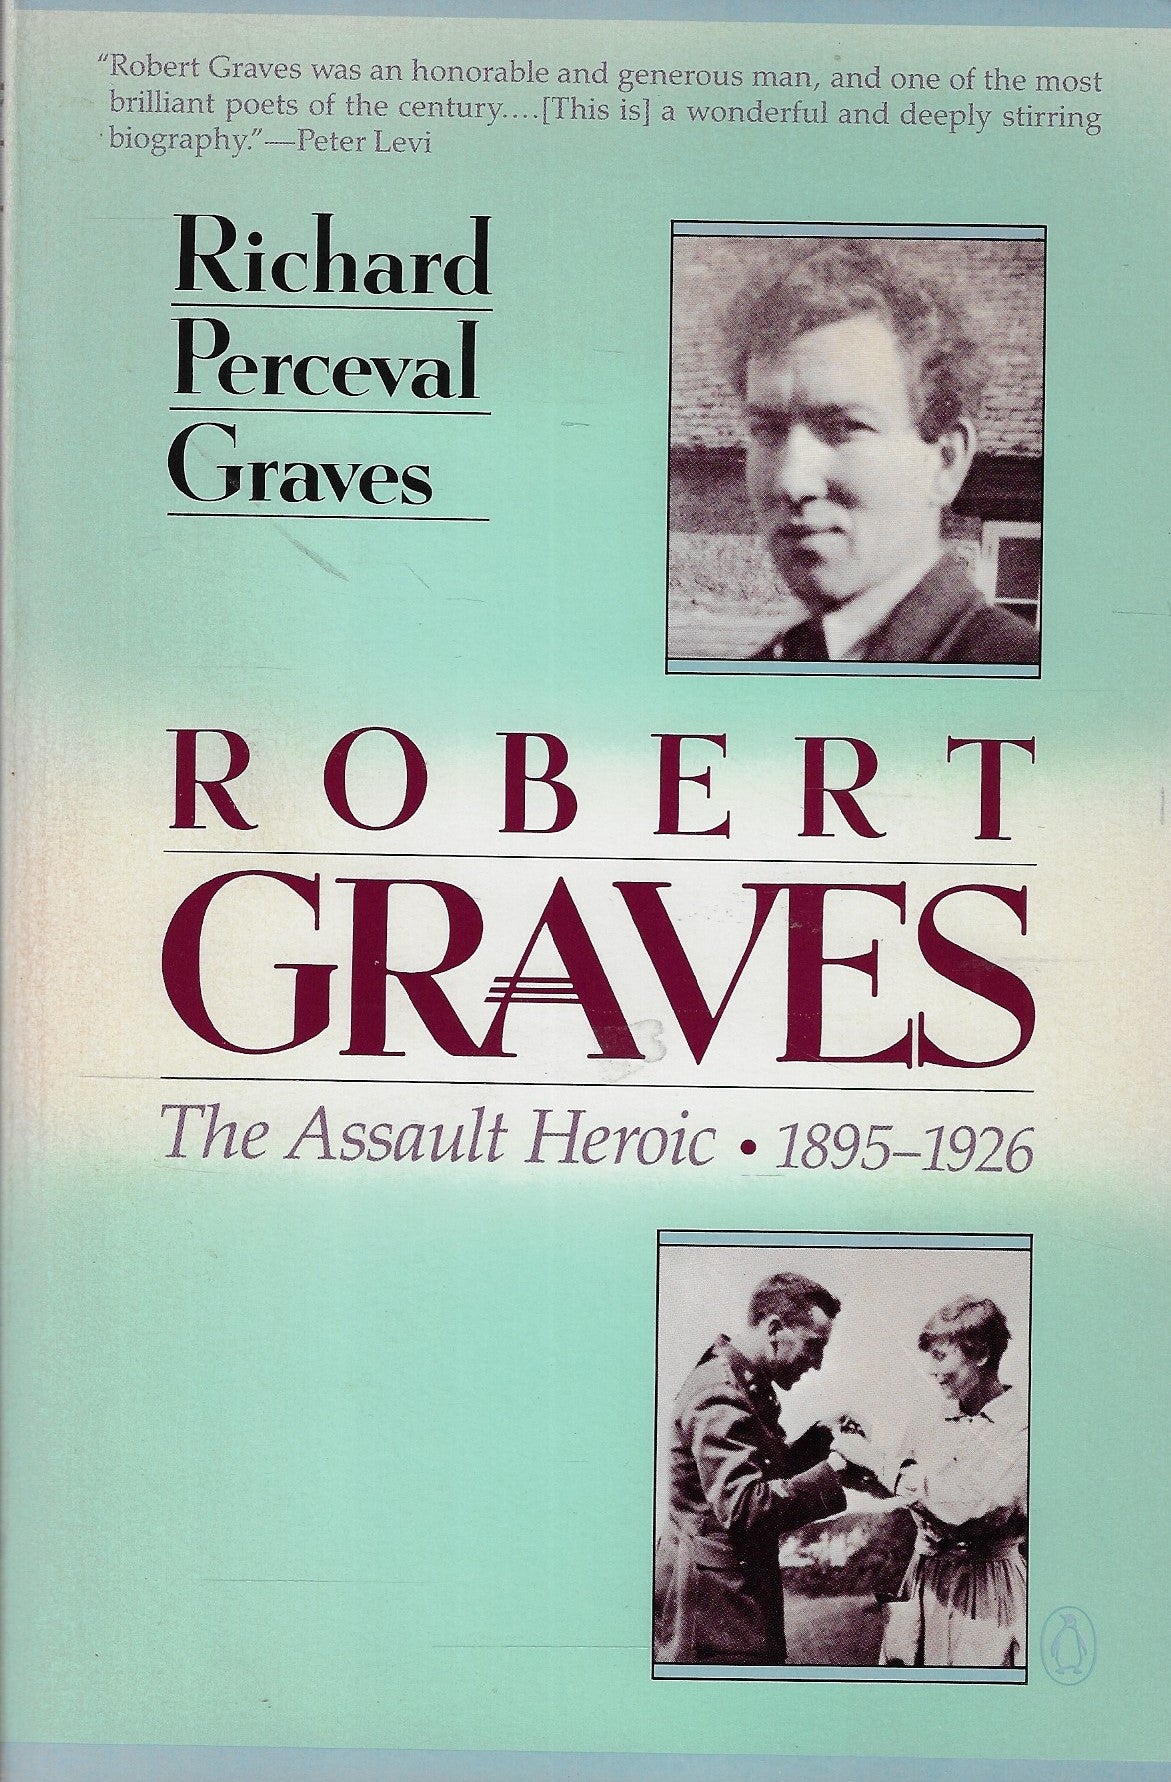 Robert Graves The Assault Heroic 1895-1926